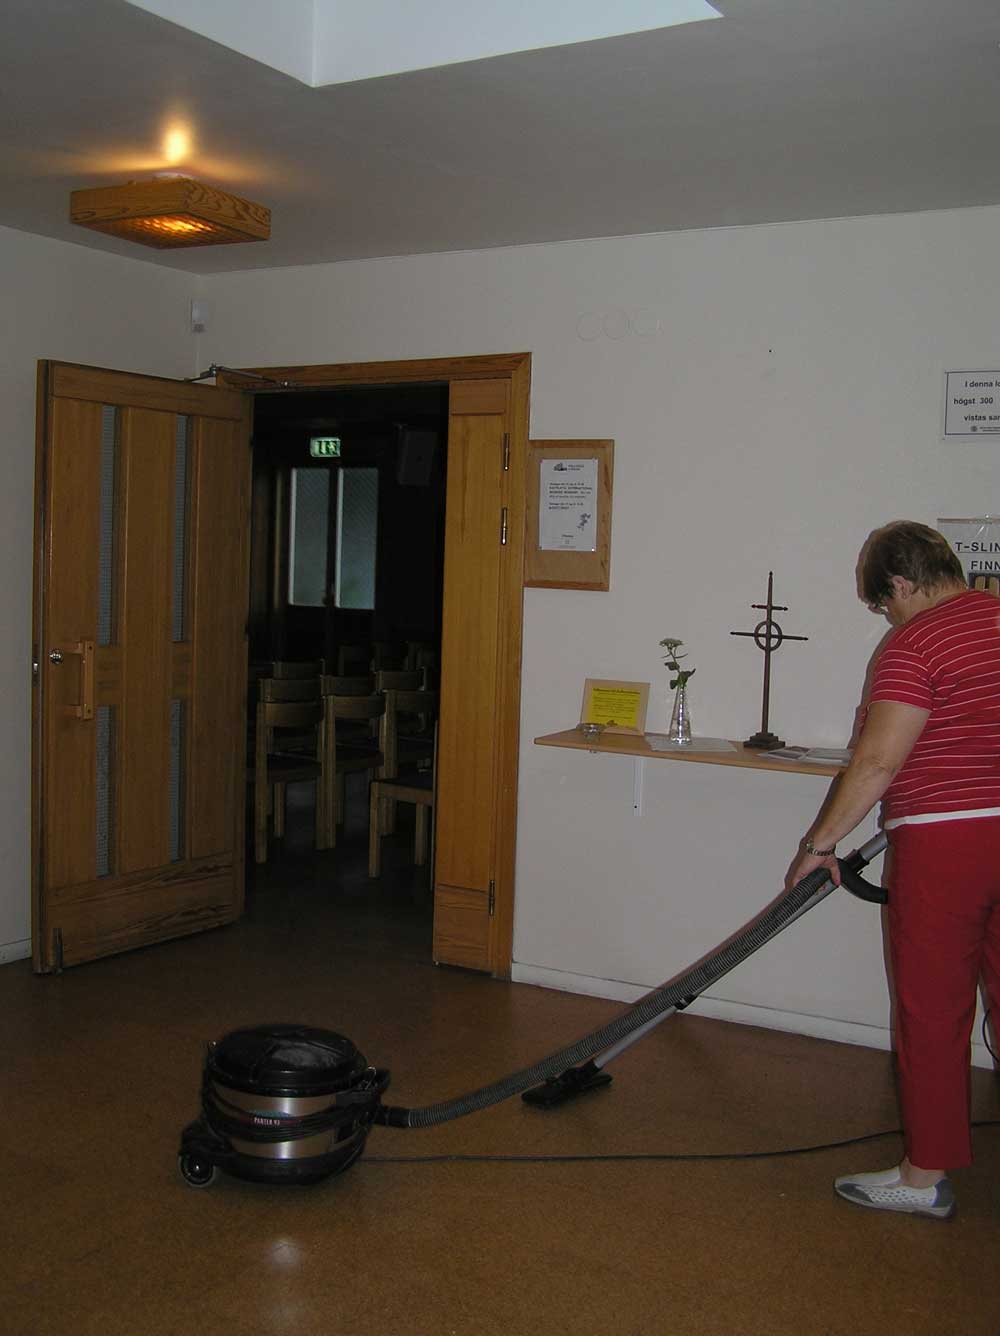 Underhållsarbete av Hallundakyrkan 2008 [foto Sennerö]